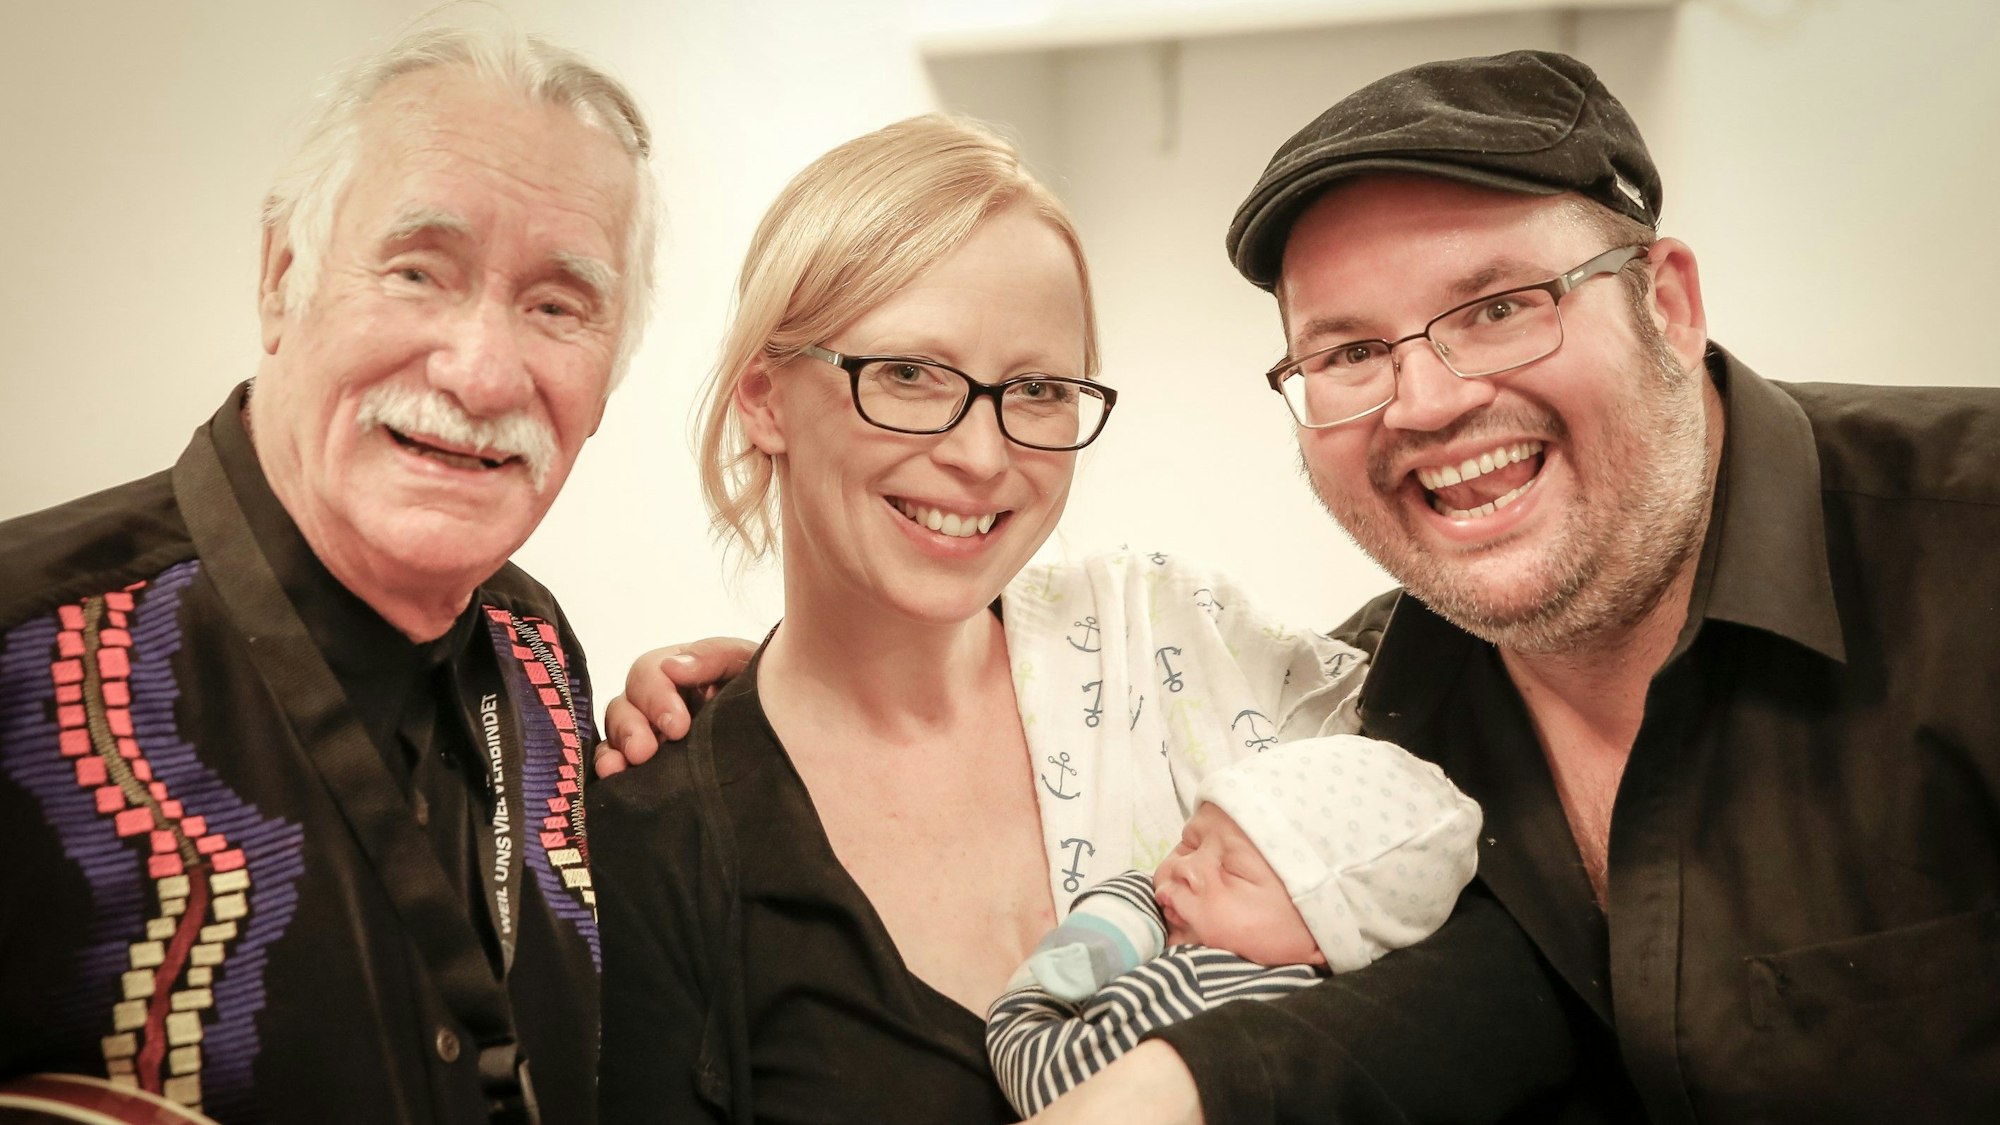 Hans Süper lächelt mit Björn Heuser und dessen Ehefrau Frau Iris, die ihr Baby im Arm hält, in die Kamera.